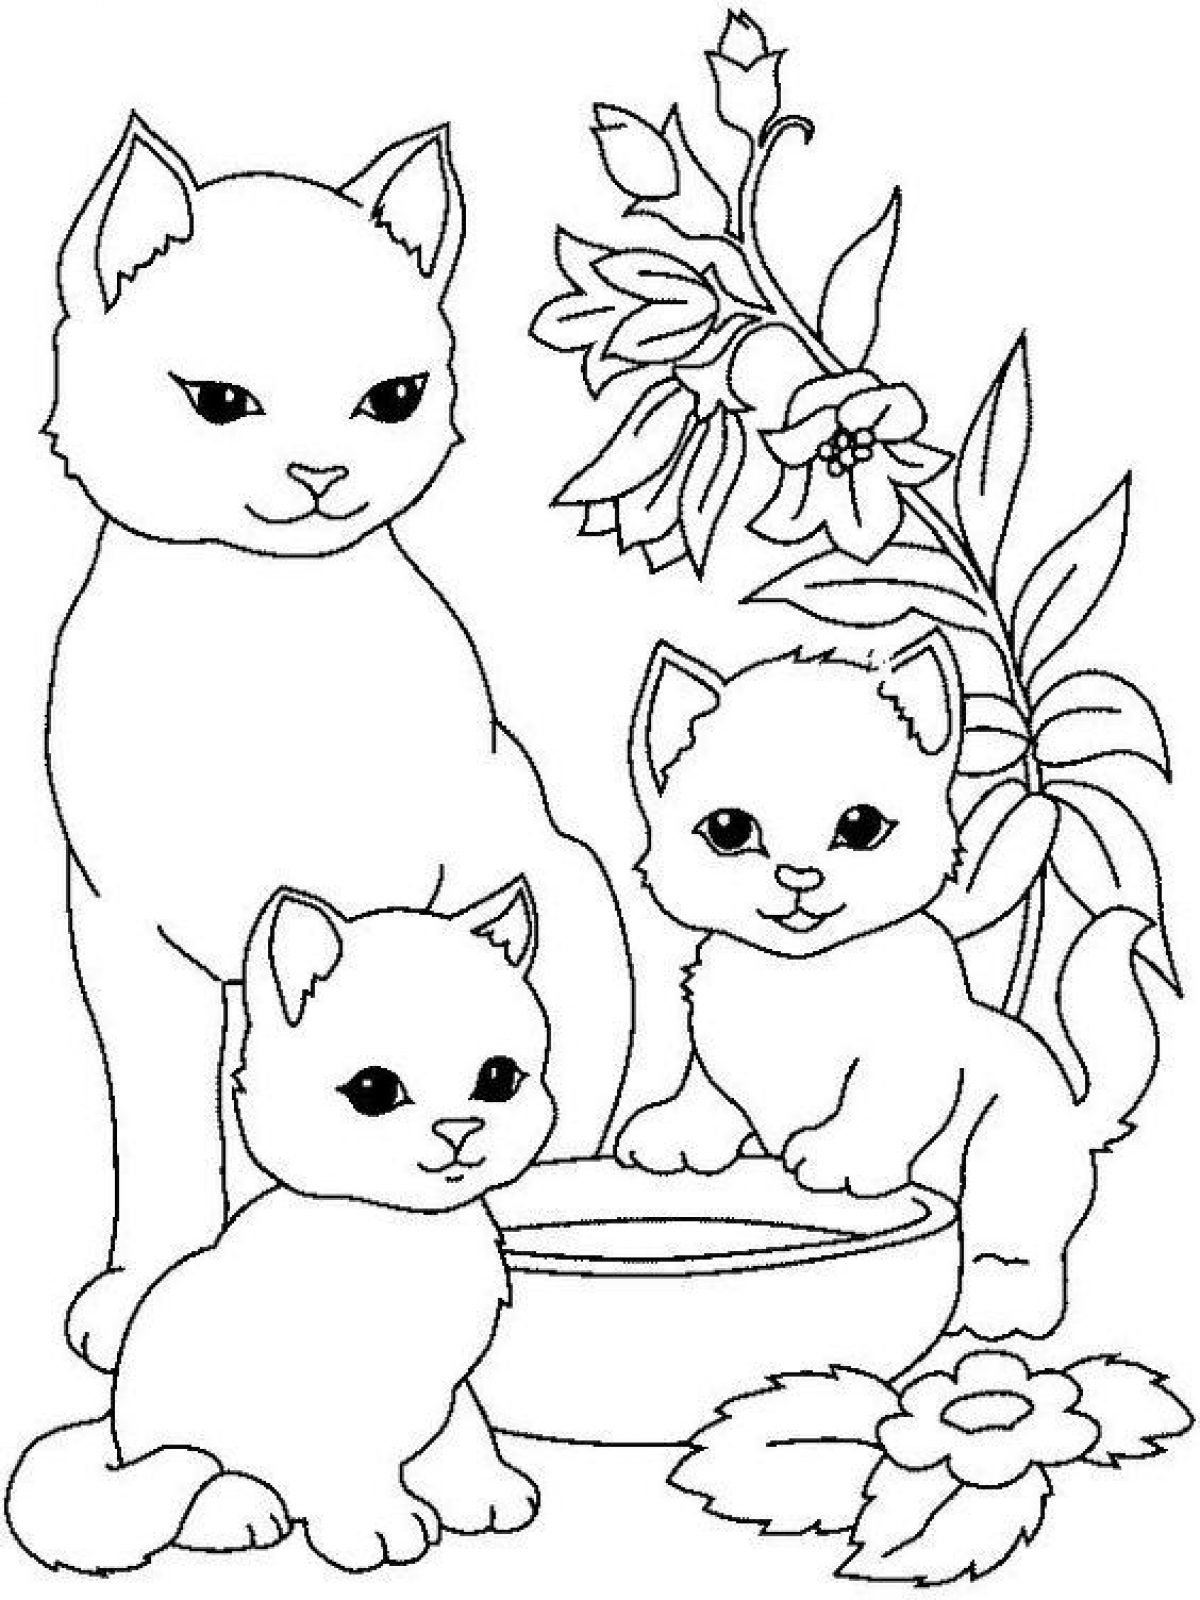 Fun cat coloring for kids